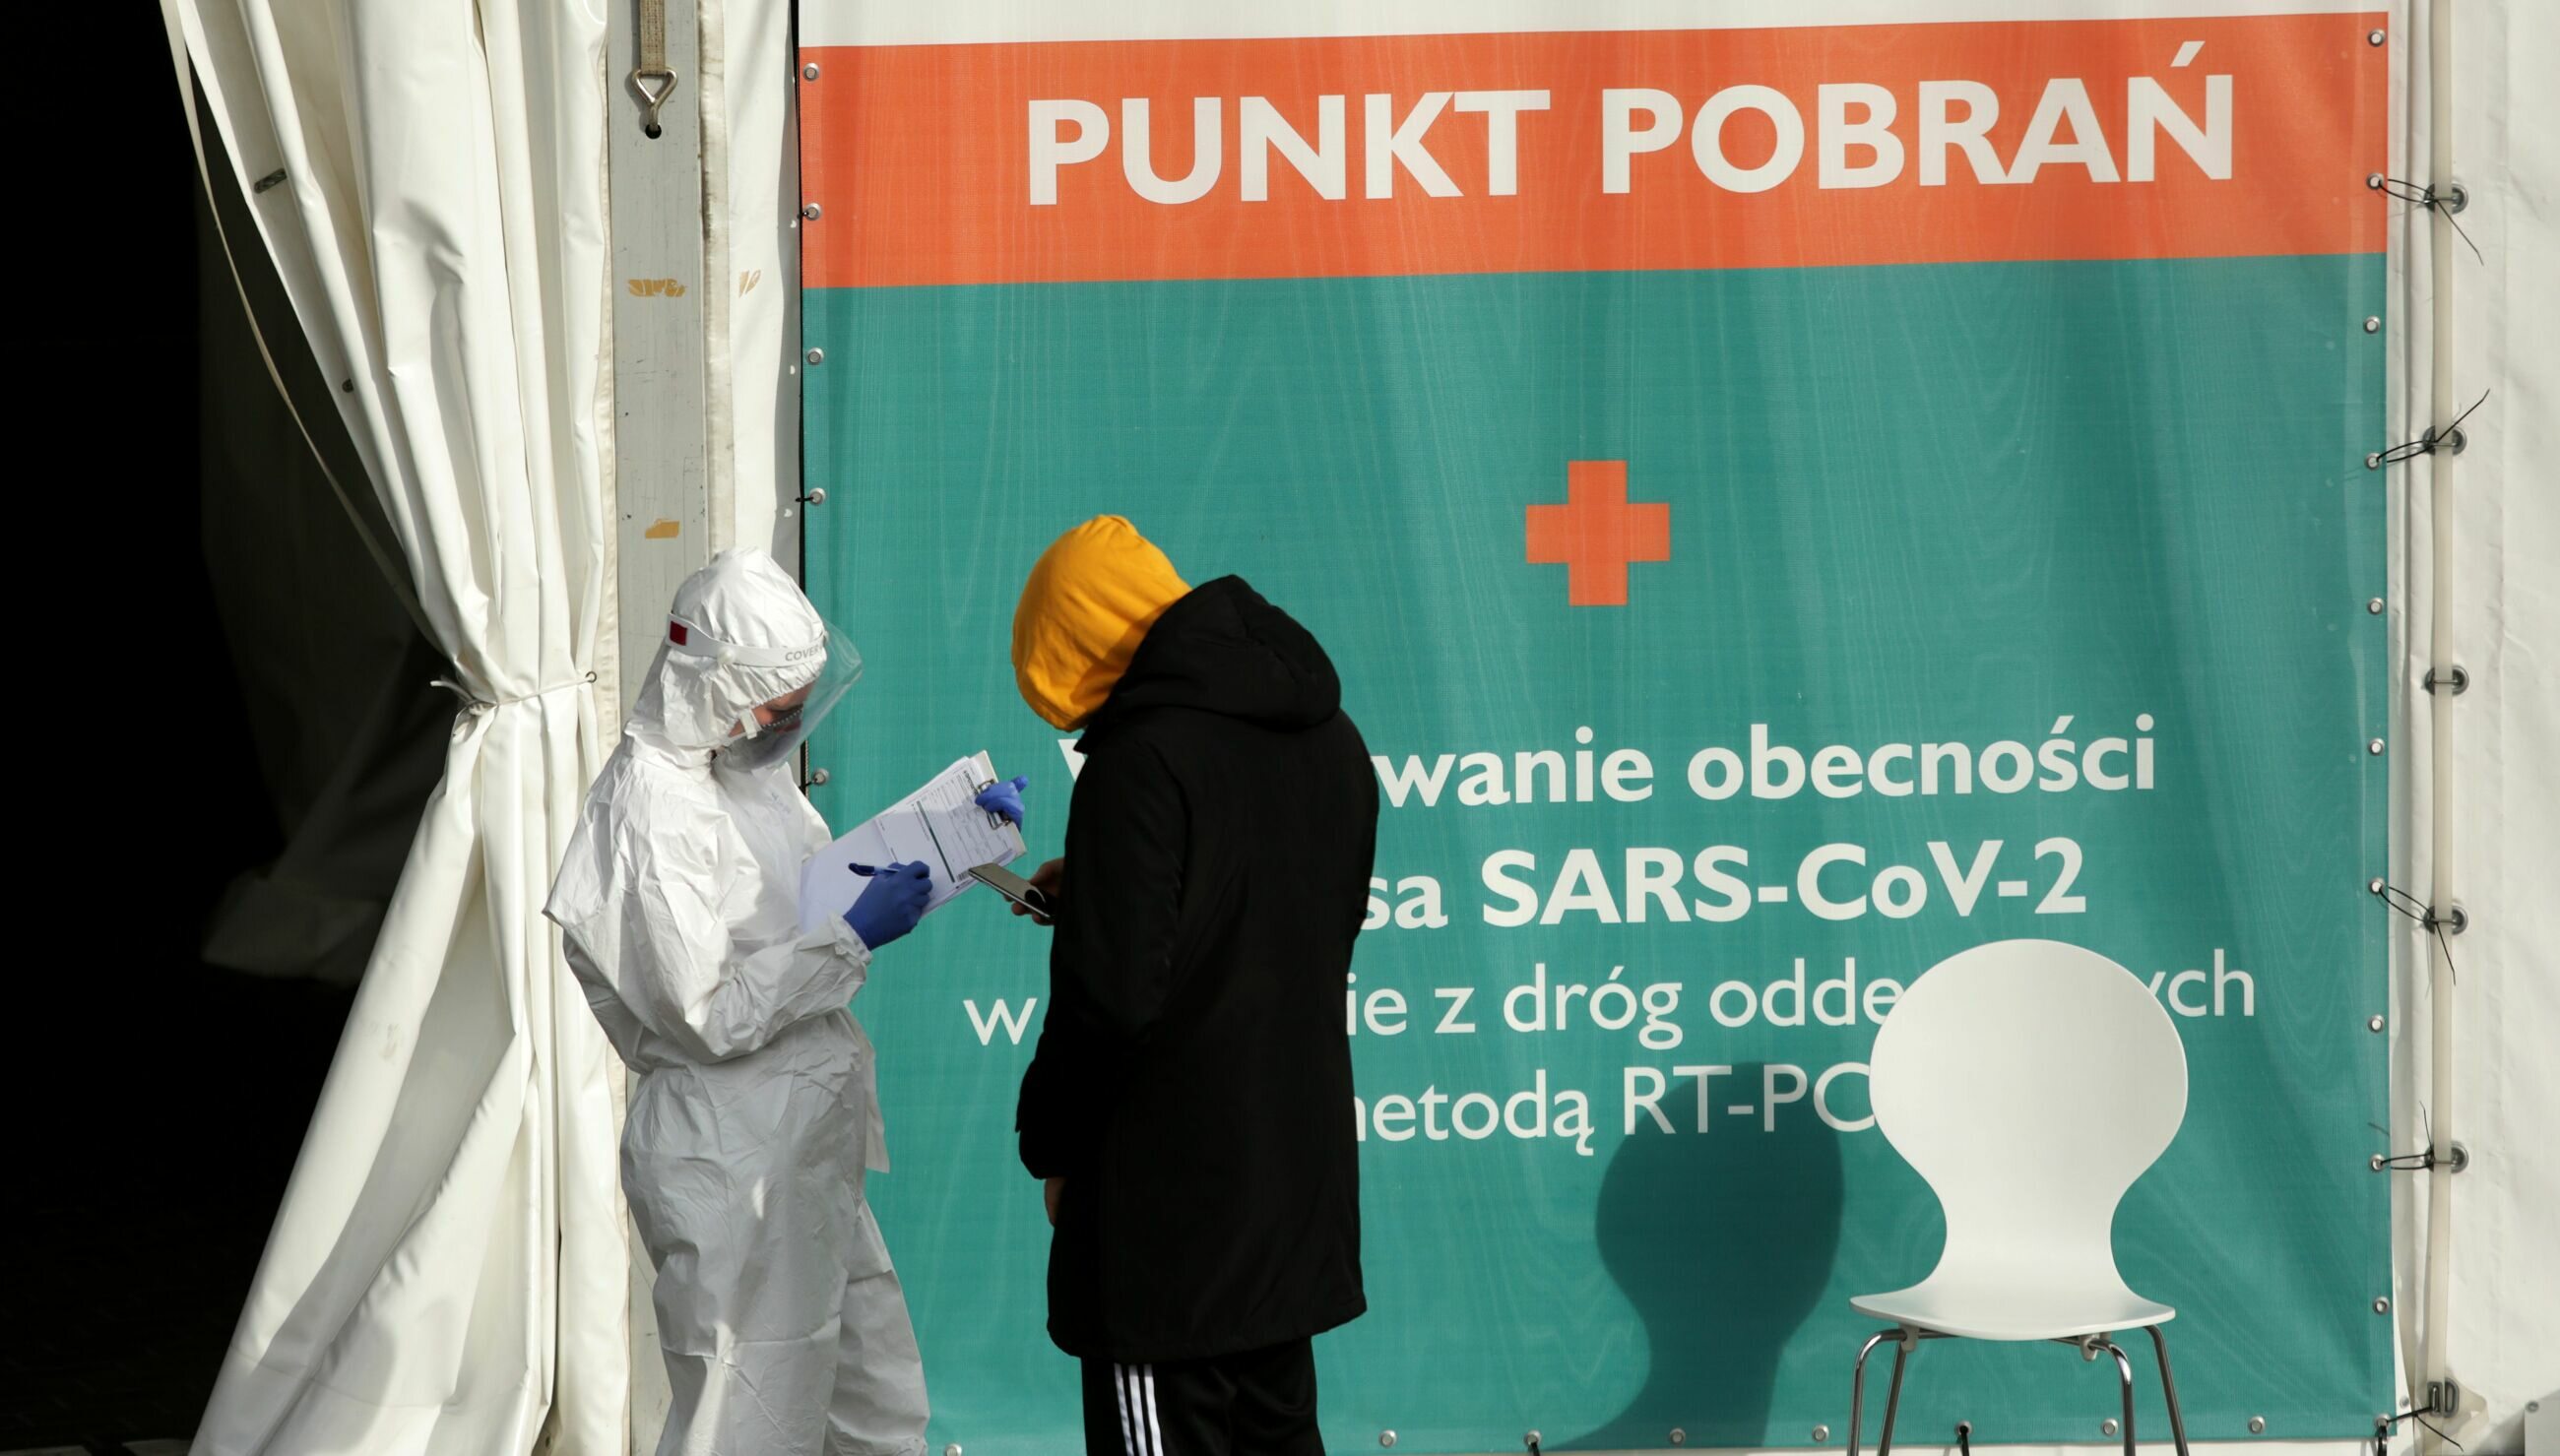 Pandemia Koronawirusa W Polsce I Na Wiecie Raport Z Grudnia